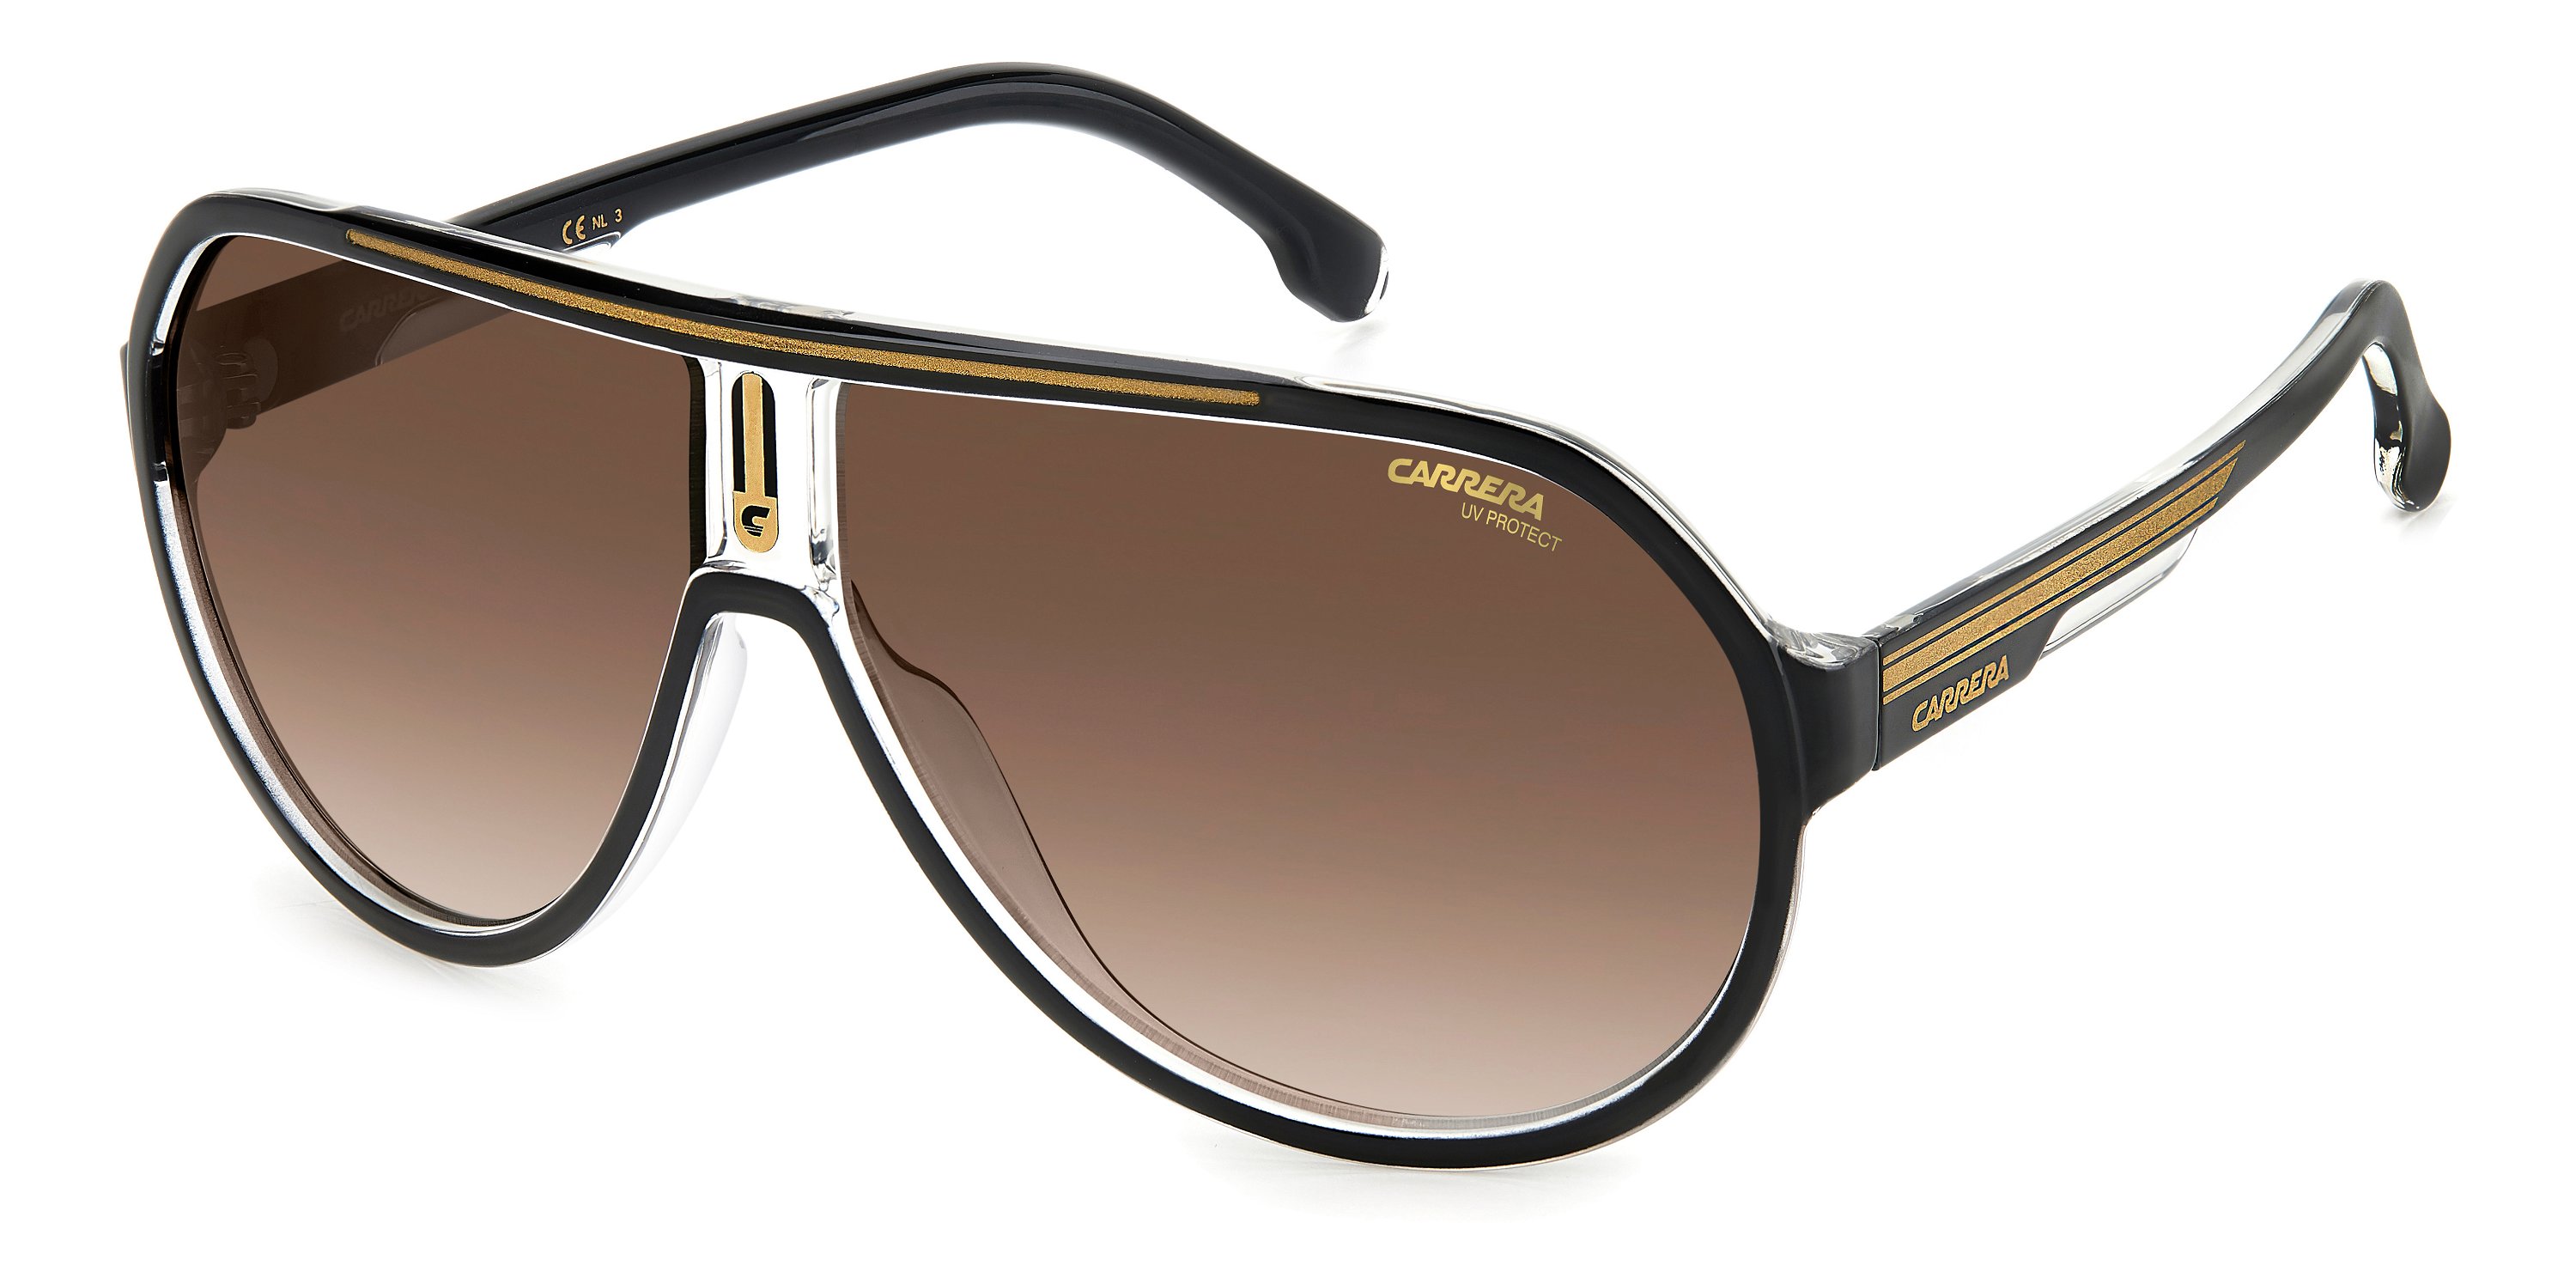 Carrera Sonnenbrille 1057/S 2M2 schwarz gold